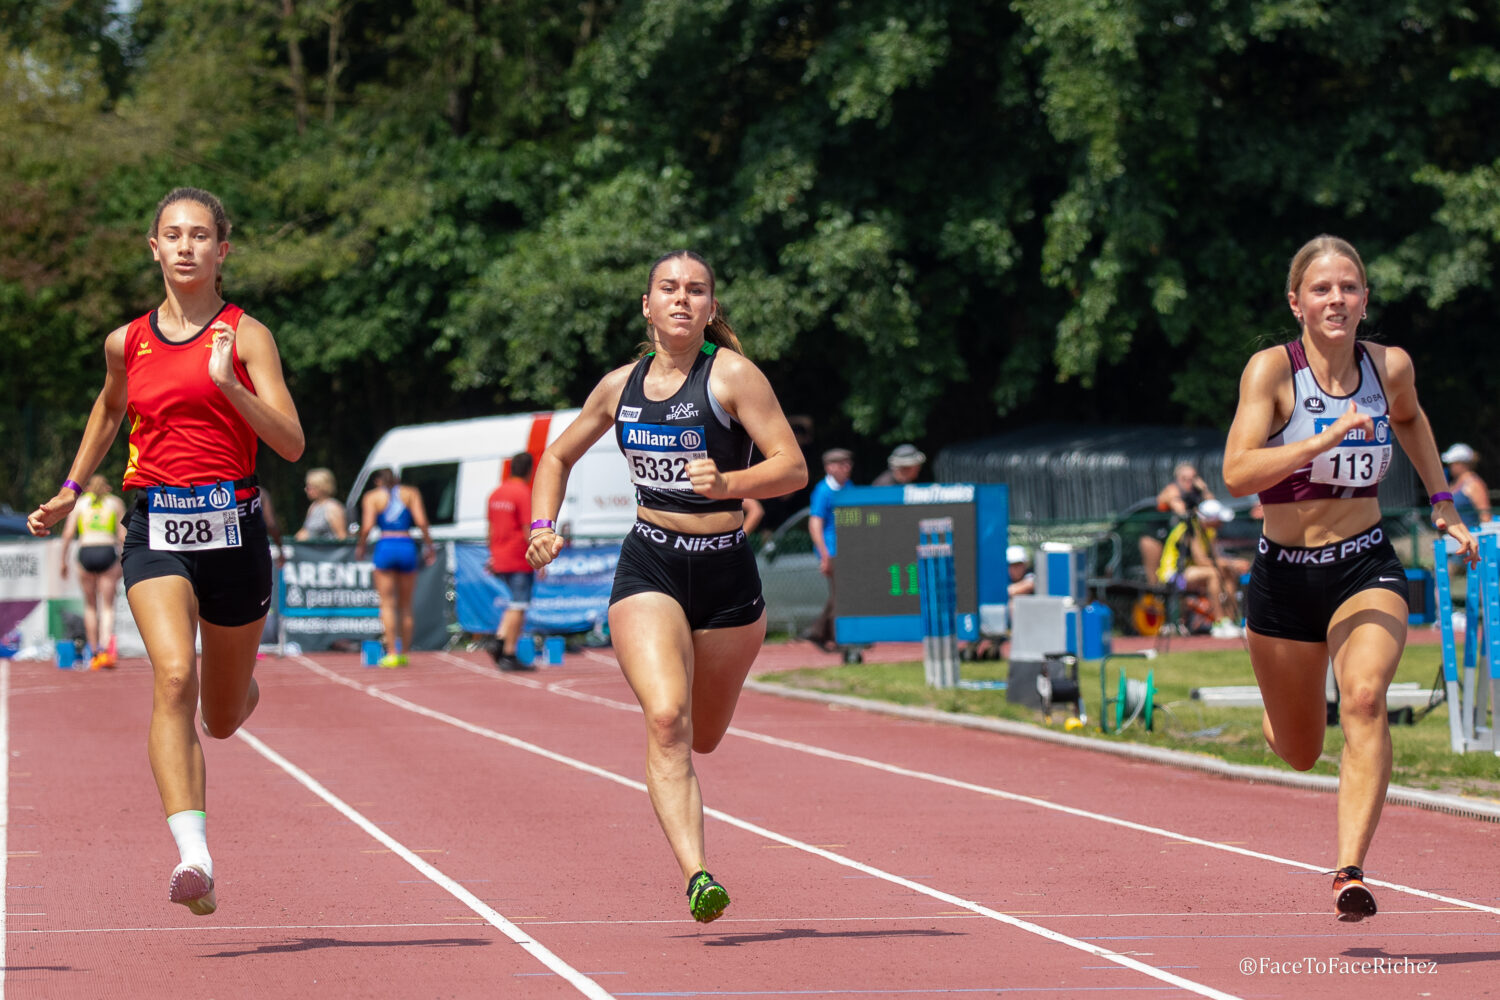 Esther Maes 828, Amber van Schepdael 5332 en Lotte Van Vlasselaer 113 op de 100 meter